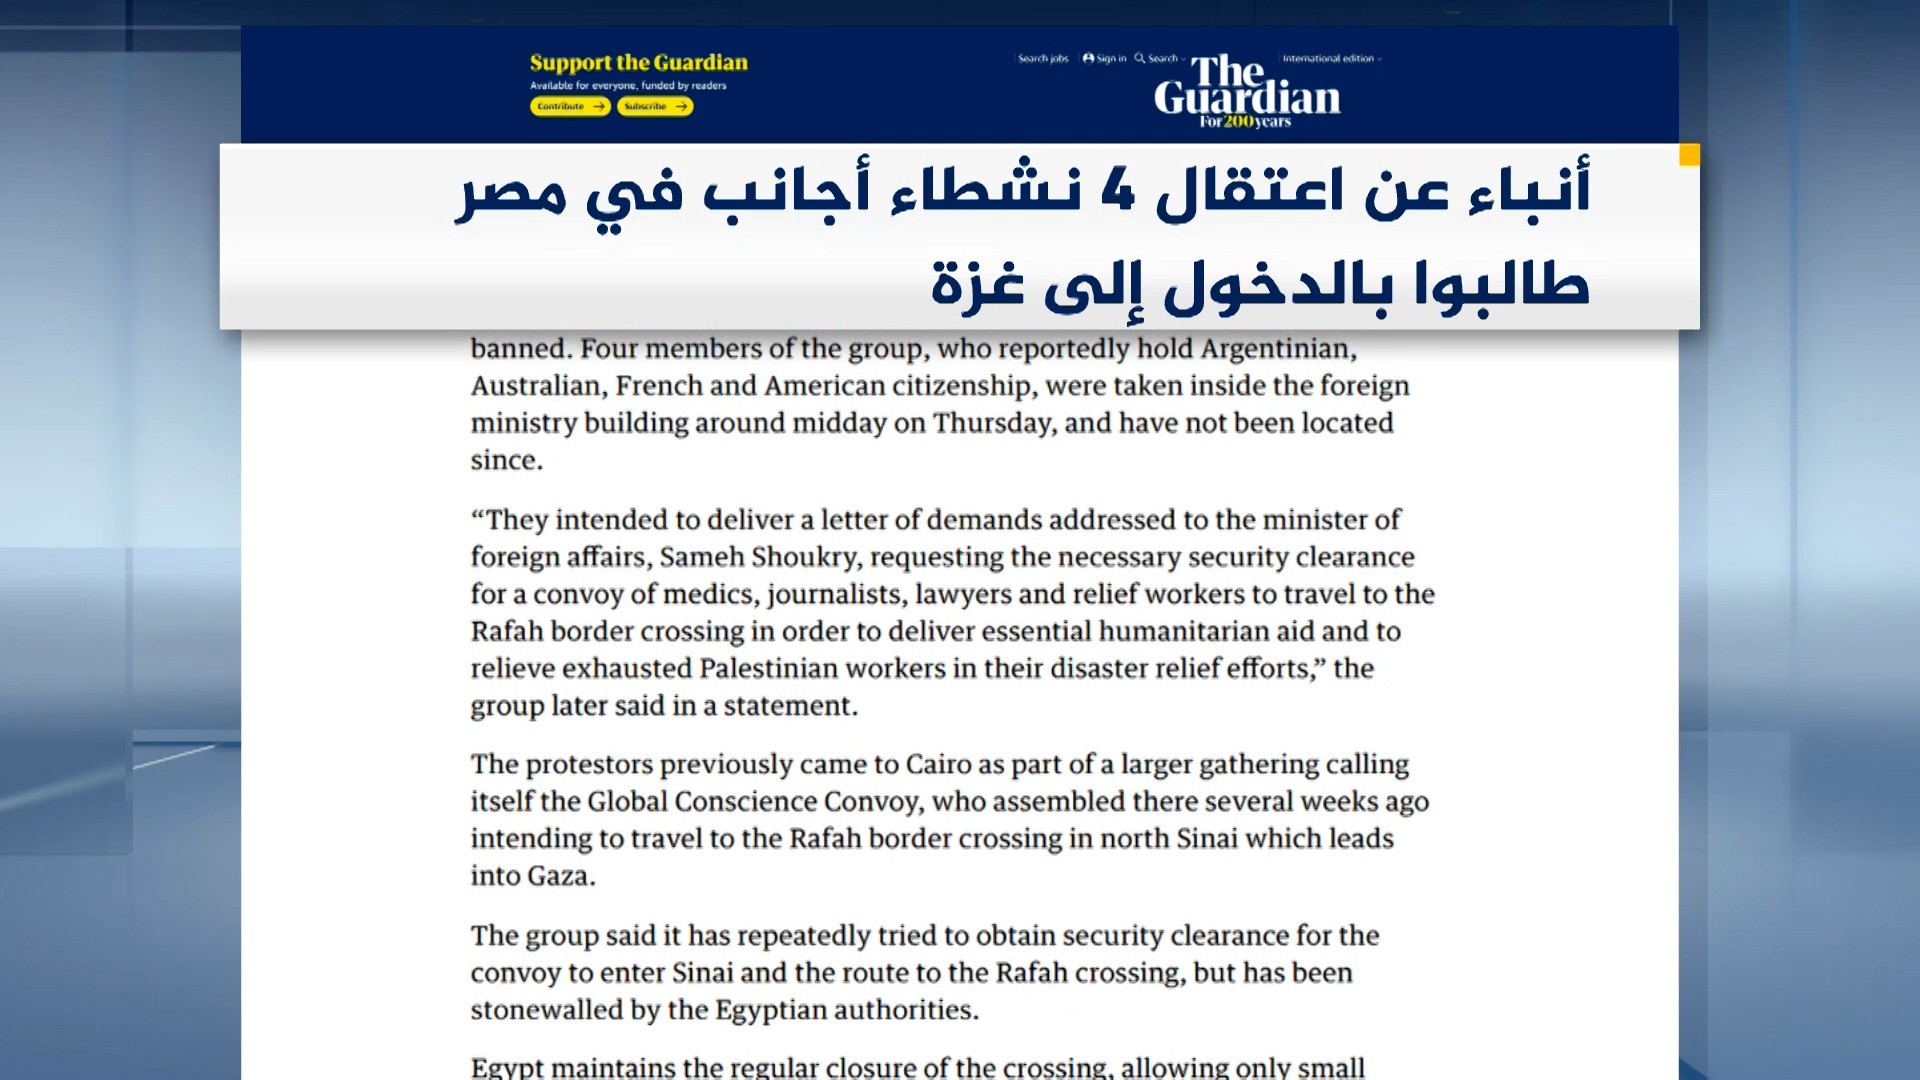 صحف عالمية: حماس نجحت في خداع إسرائيل قبل هجوم طوفان الأقصى | البرامج – البوكس نيوز